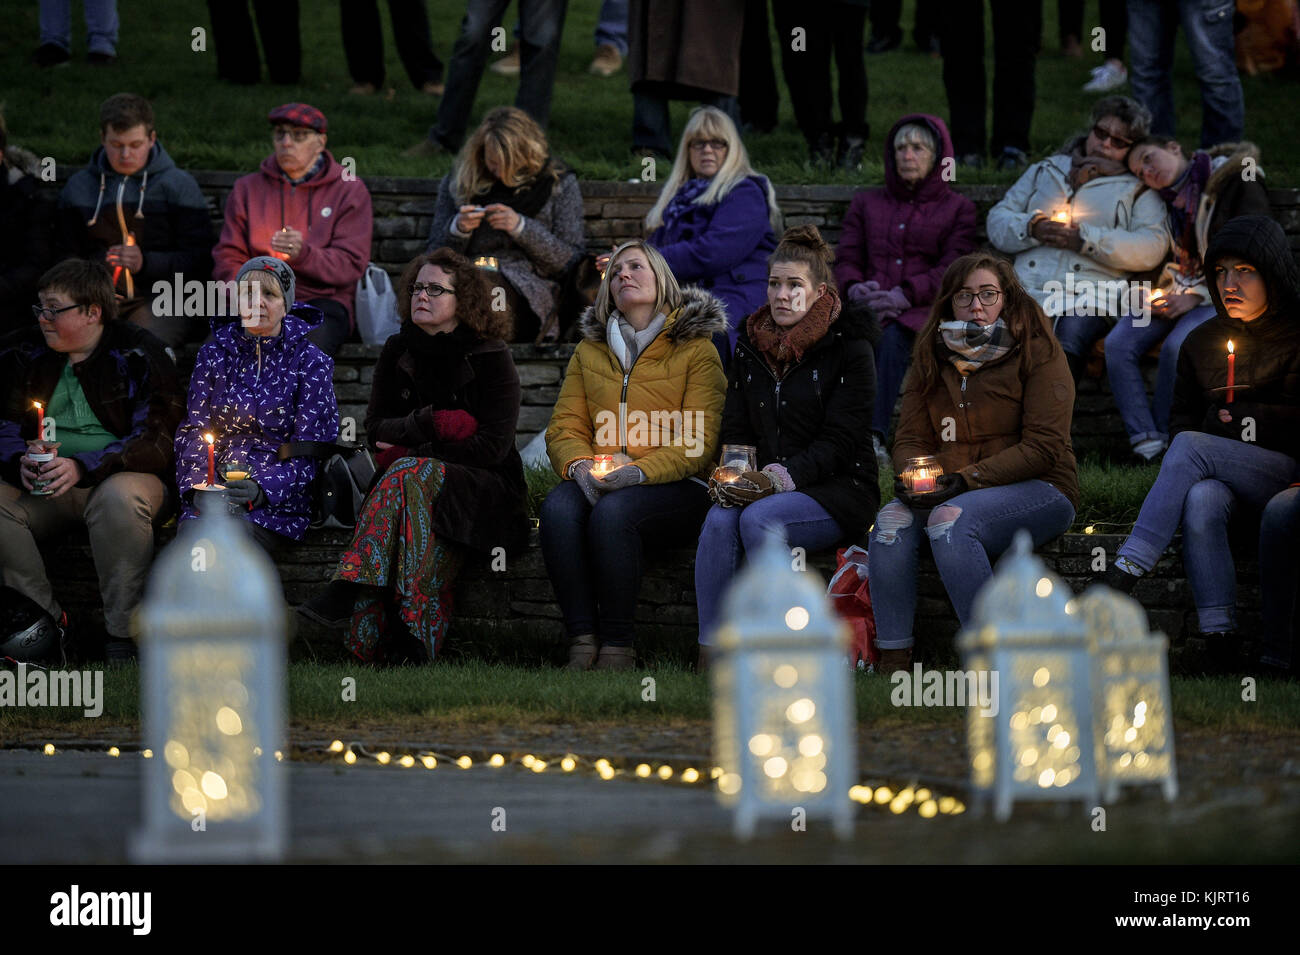 In den Prince Albert Gardens in Swanage, Dorset, nehmen Menschen an einer Kerzenlichtmahnwache Teil, um dem 19-jährigen Gaia Pope, dessen Leichnam am 18. November in der Nähe gefunden wurde, ihre Ehre zu erweisen. Stockfoto